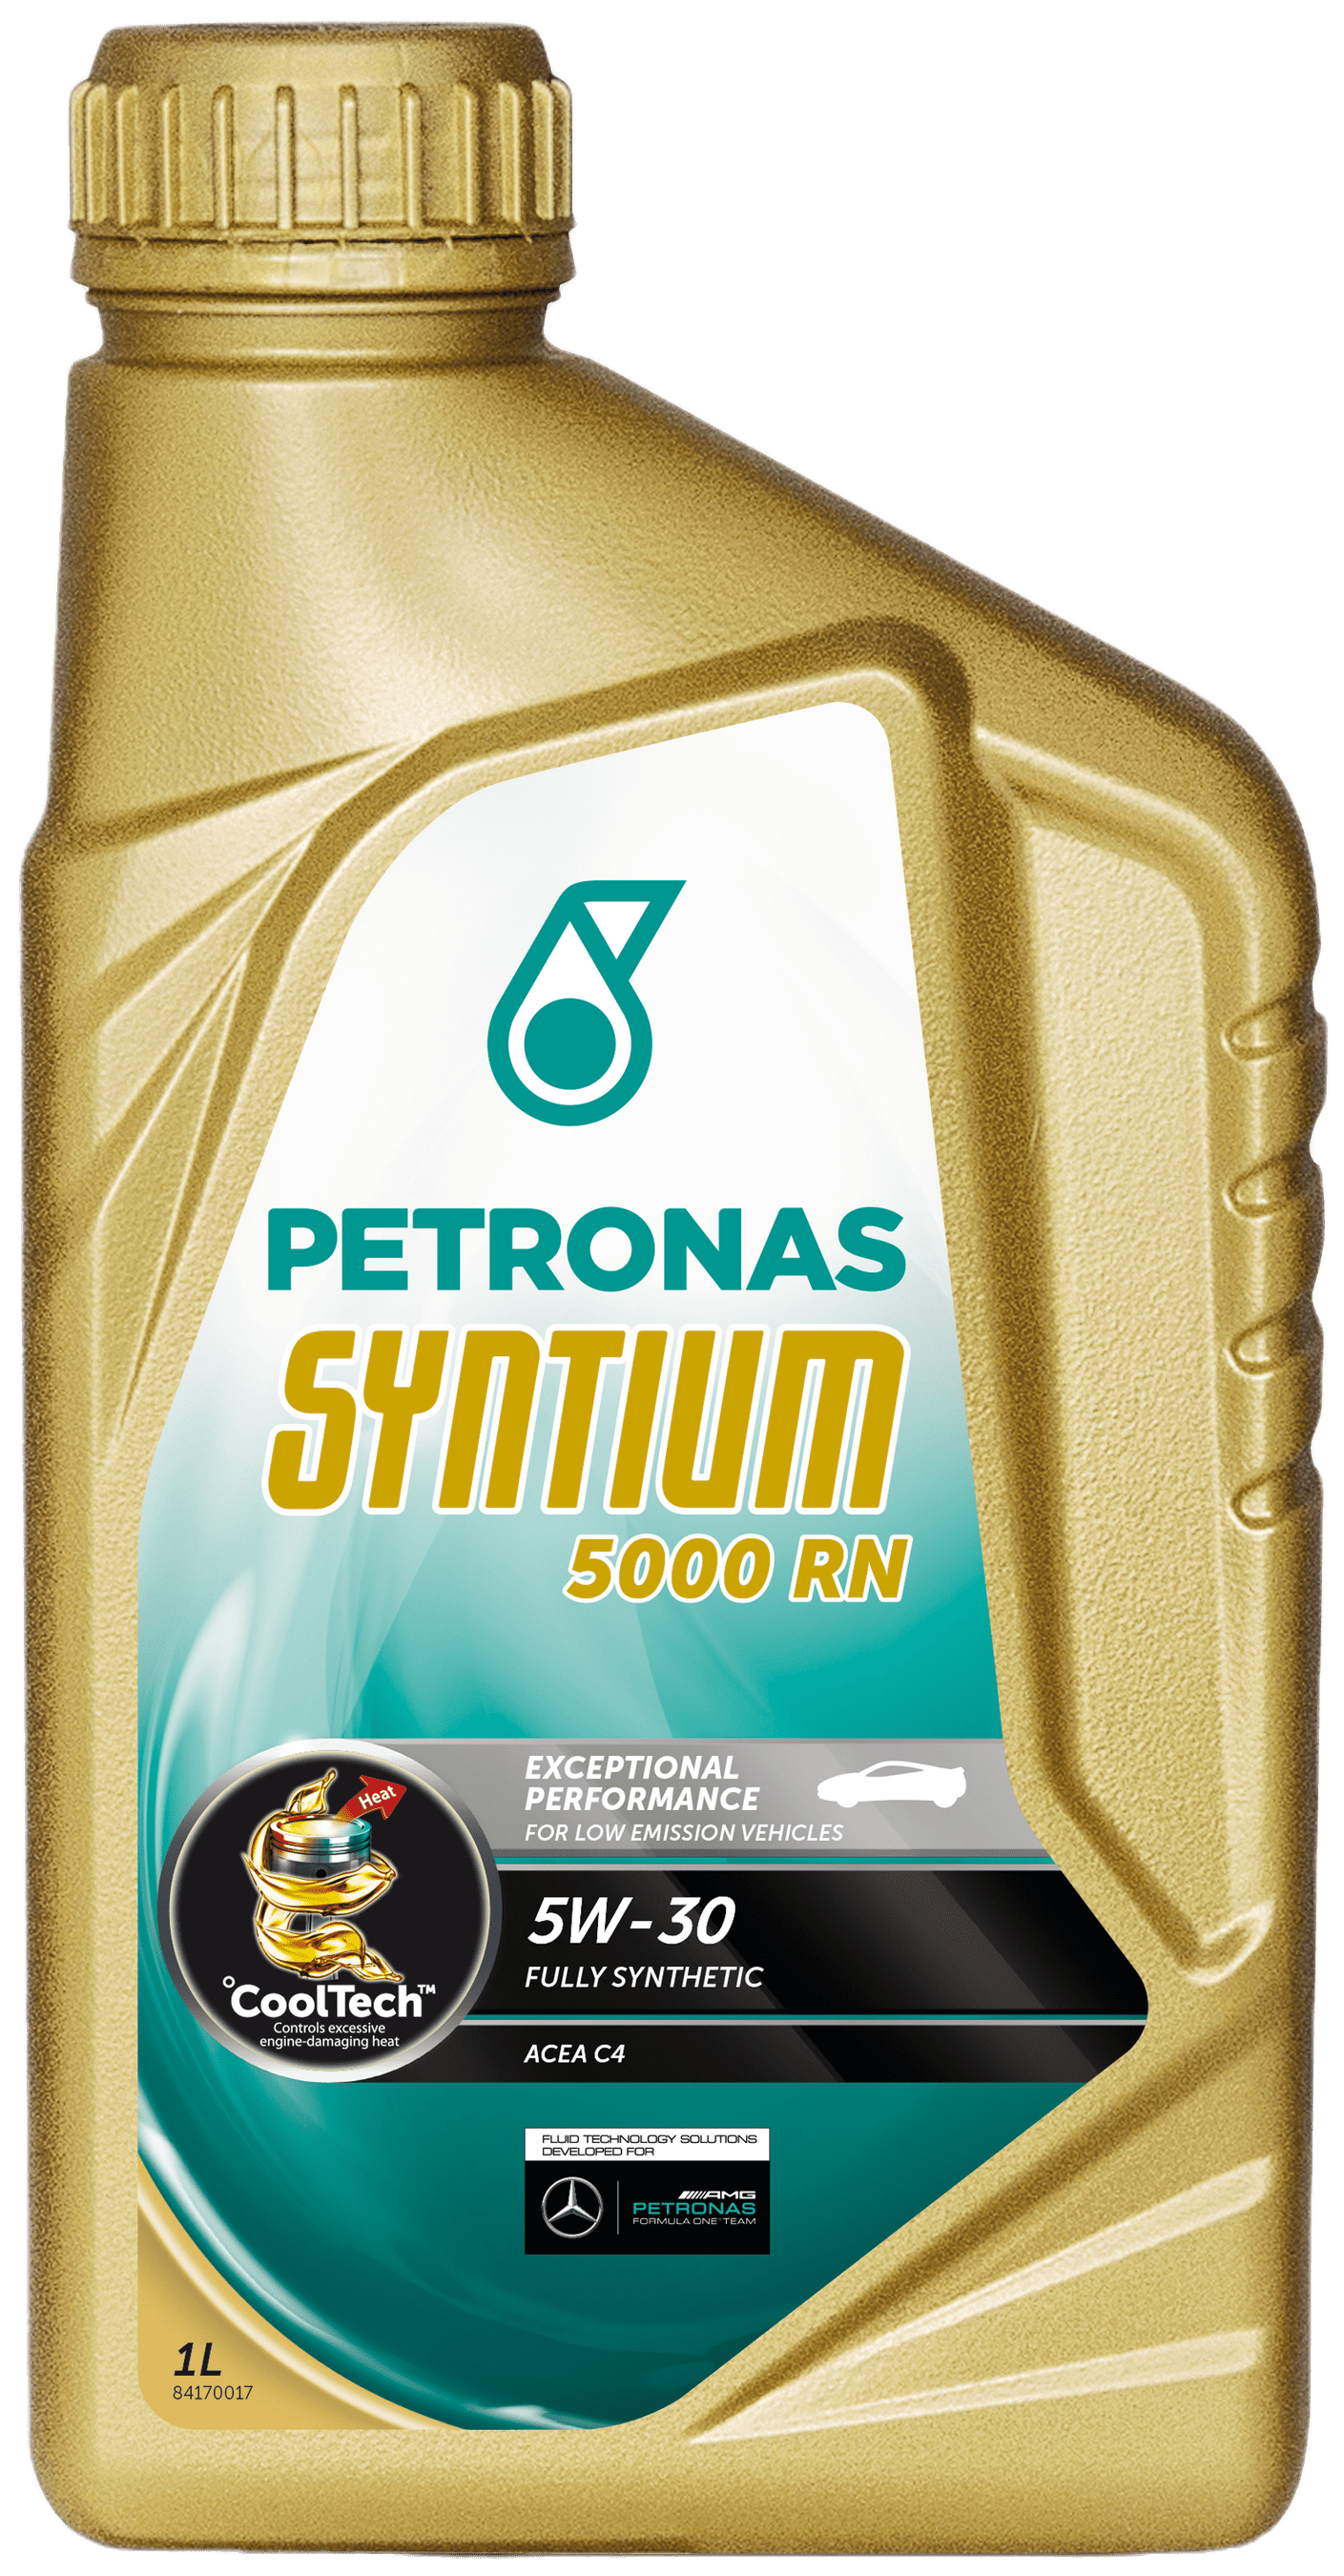 Petronas Syntium 5000 RN 5W-30, 1 lt